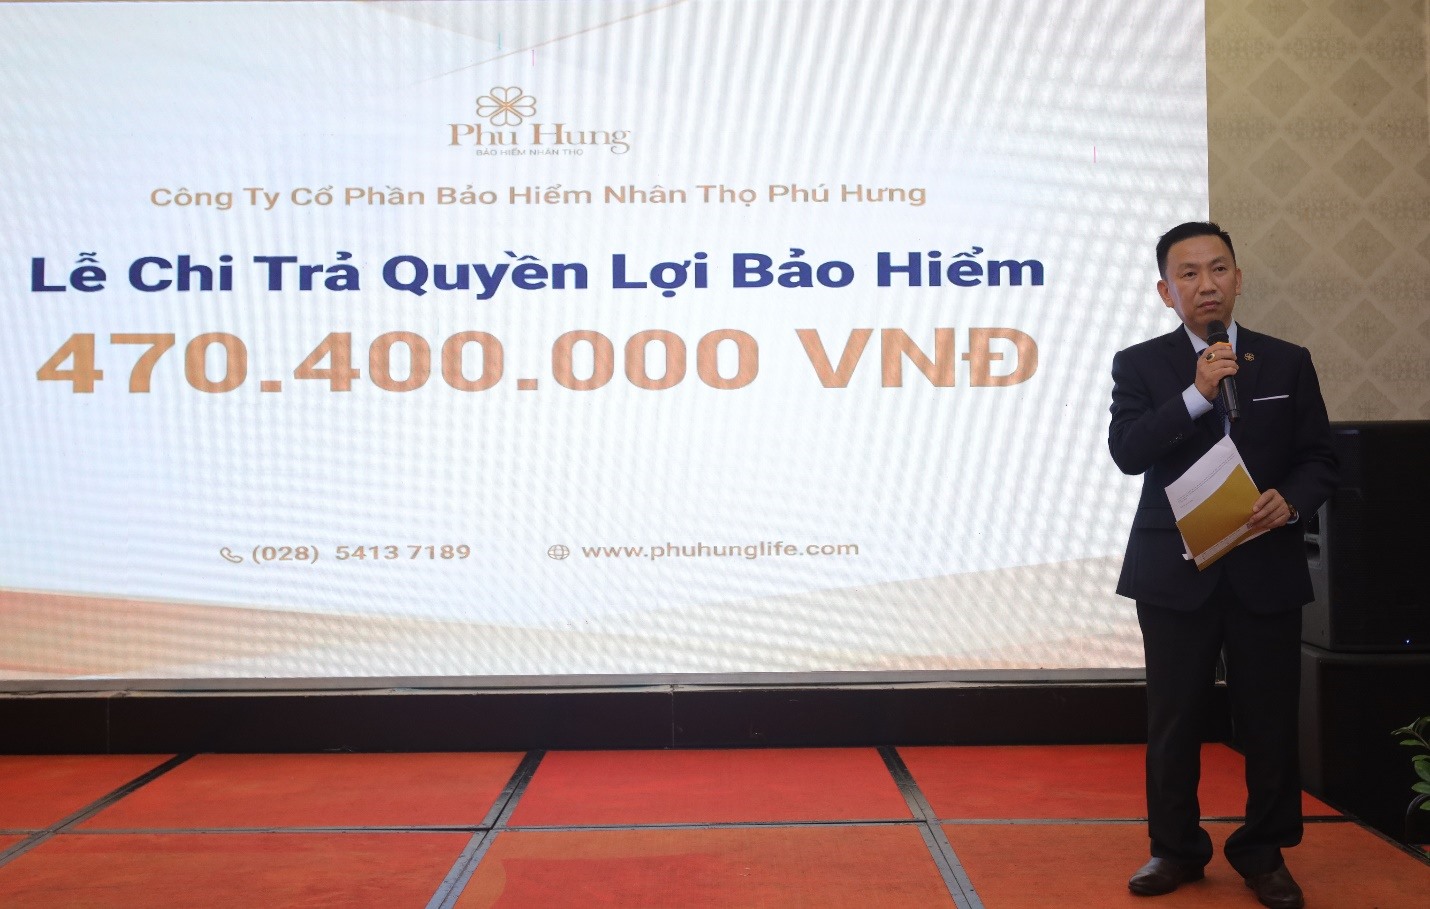 Ông Võ Tất Thắng, Giám đốc kinh doanh Miền, khu vực Miền Trung công ty Phú Hưng Life chia sẻ tại sự kiện